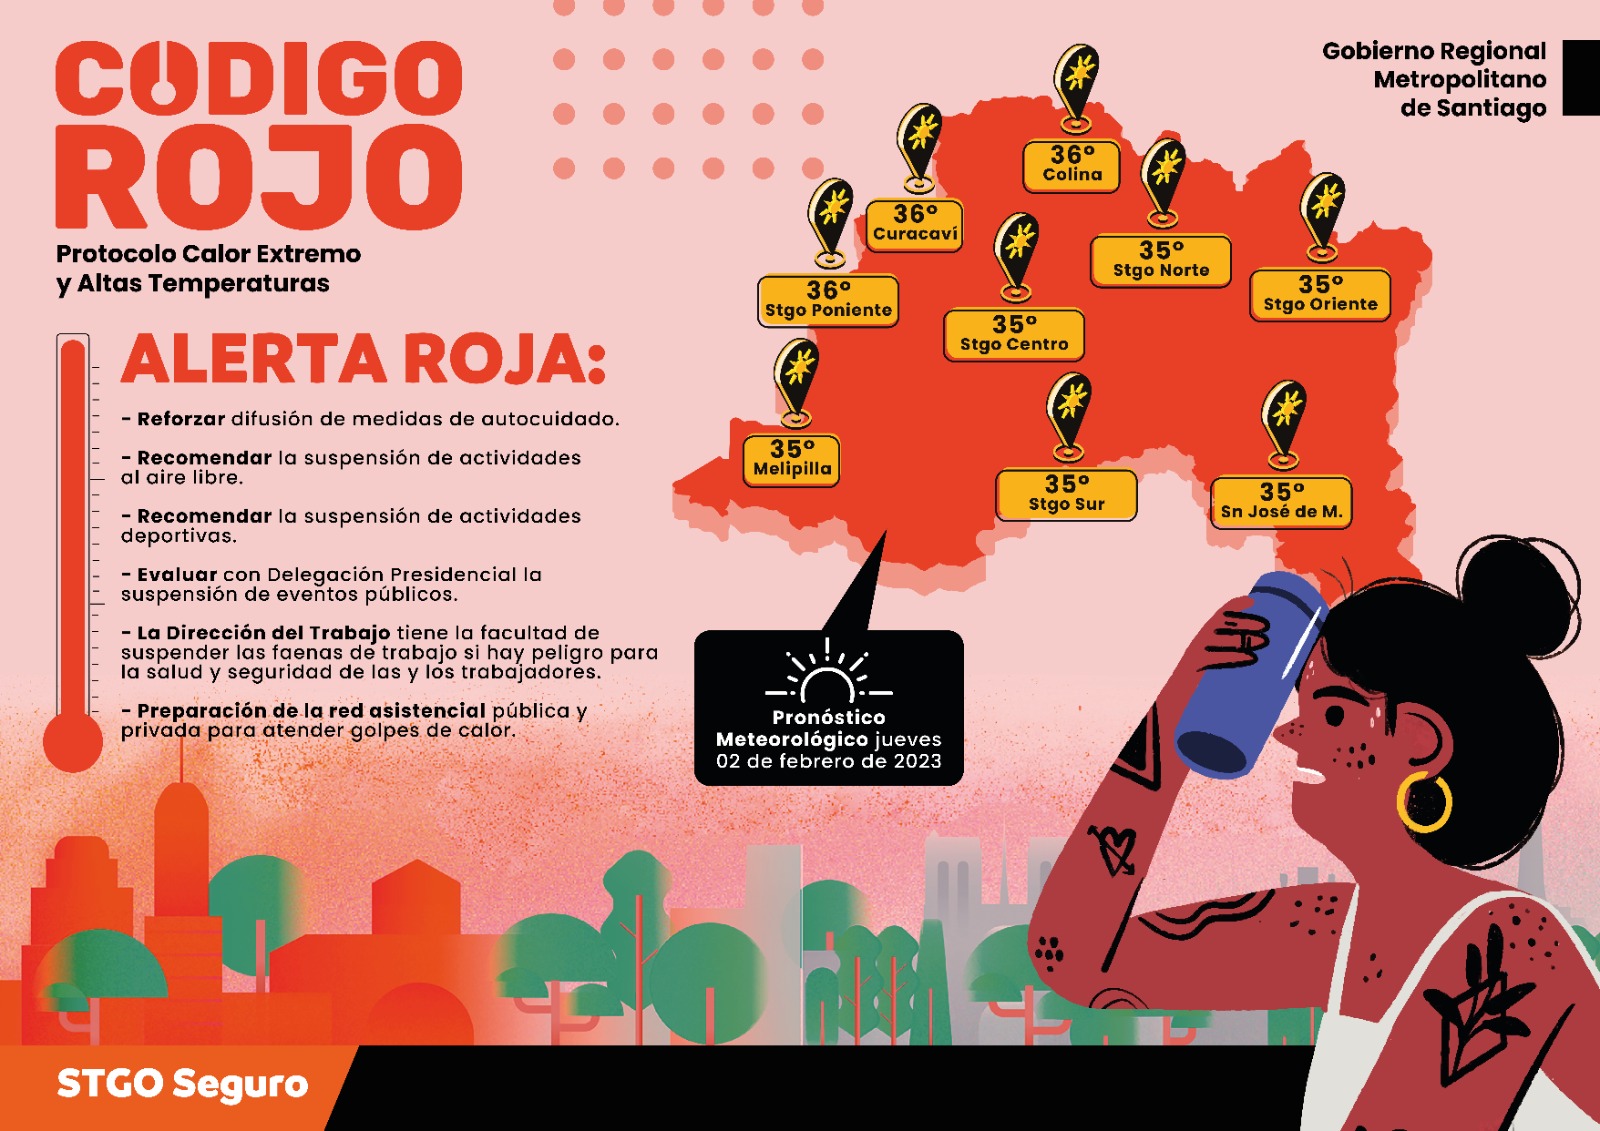 Codigo rojo / Recomendaciones por jornada con altas temperaturas en la Región Metropolitana